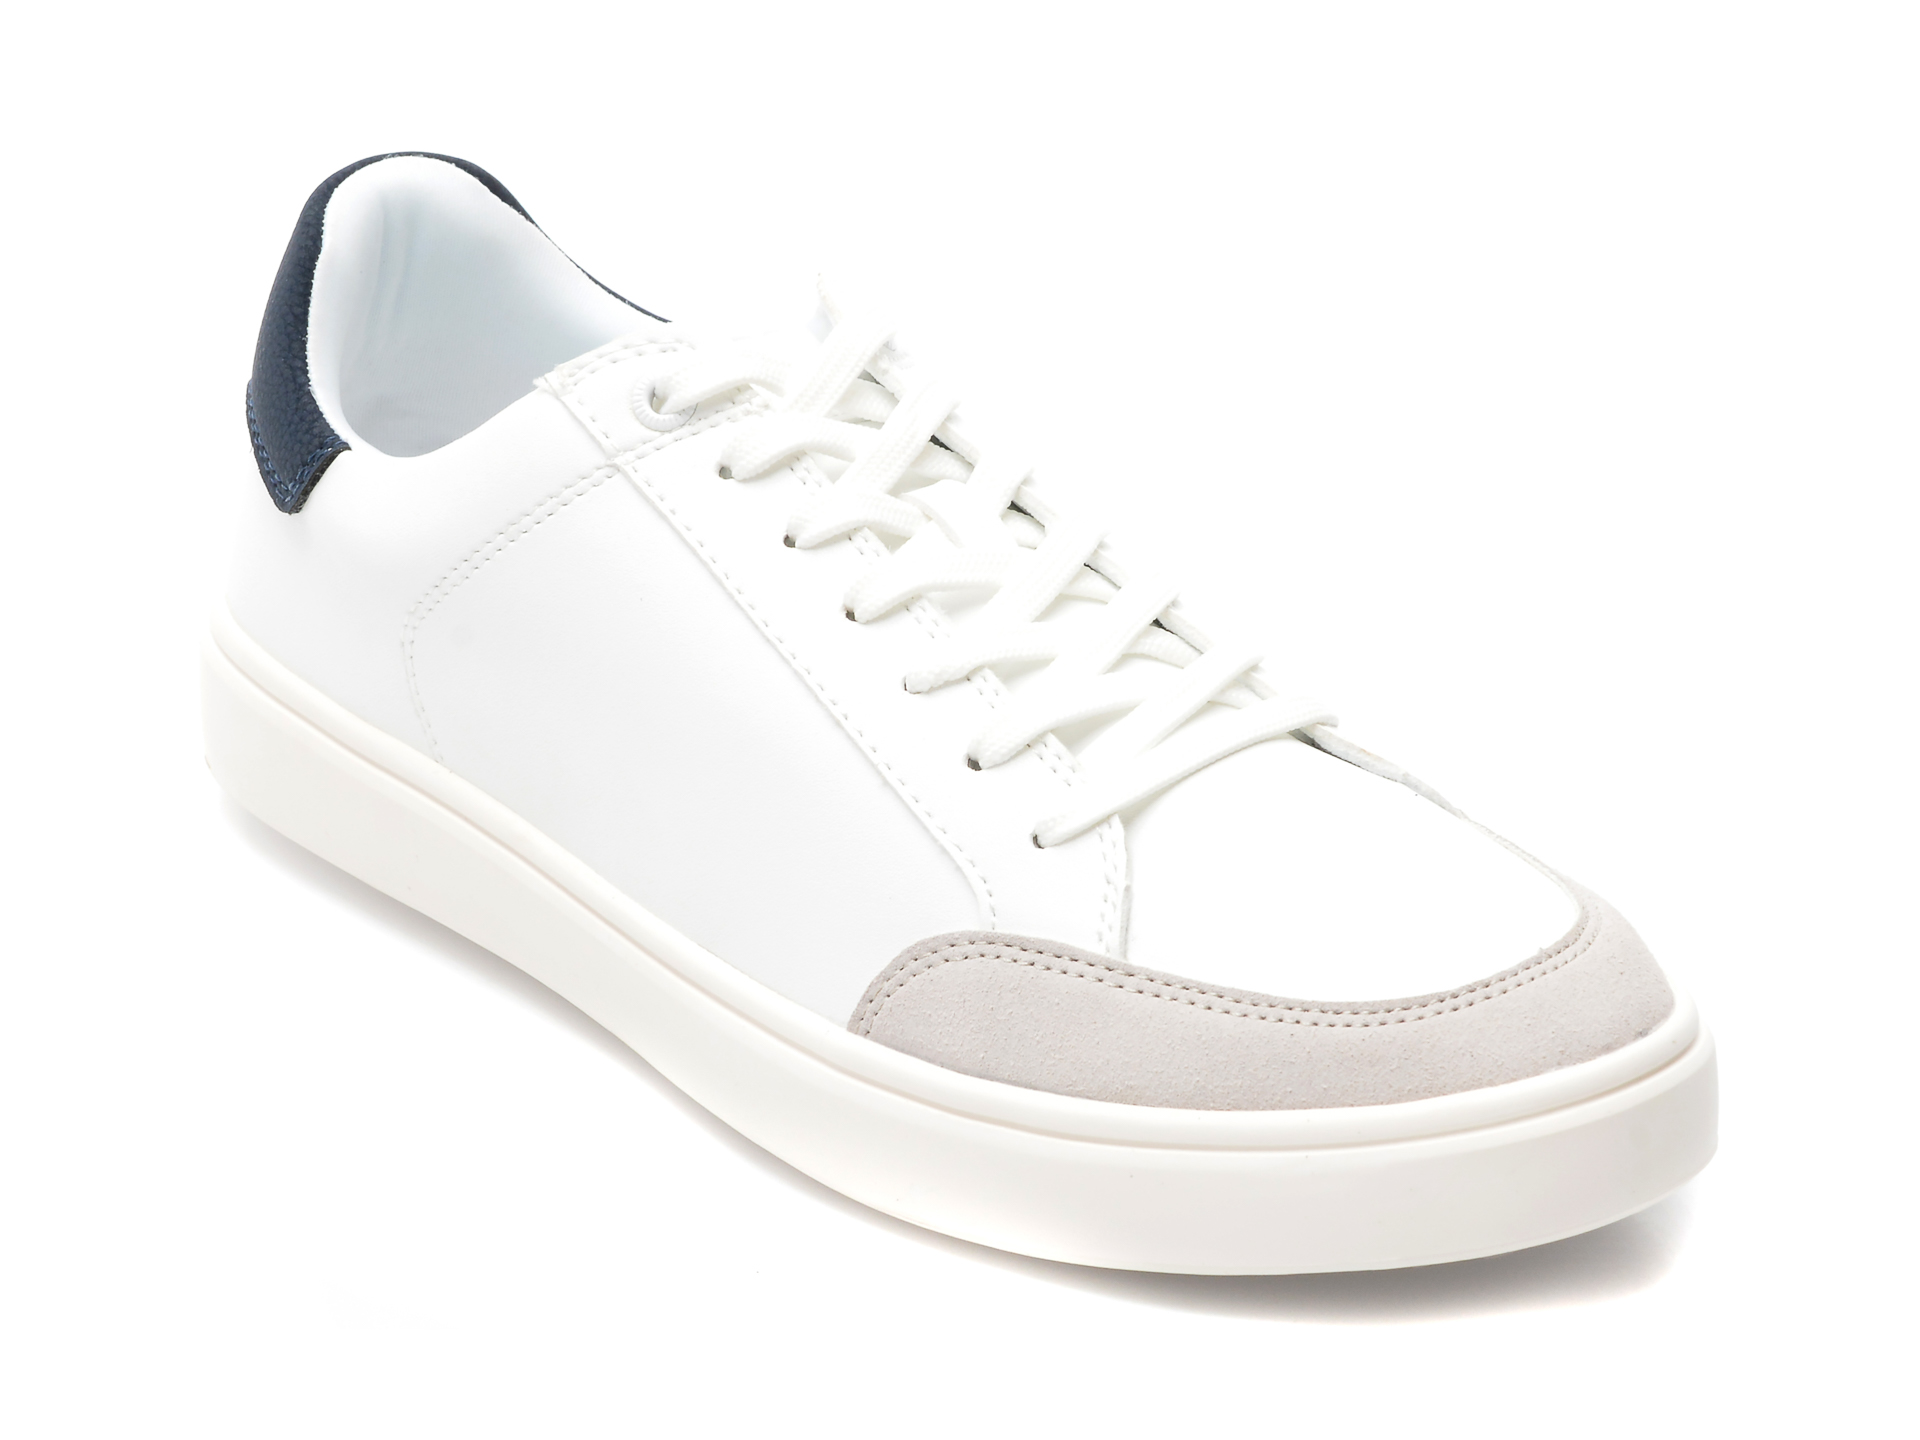 Pantofi ALDO albi, COURTSPEC110, din piele ecologica